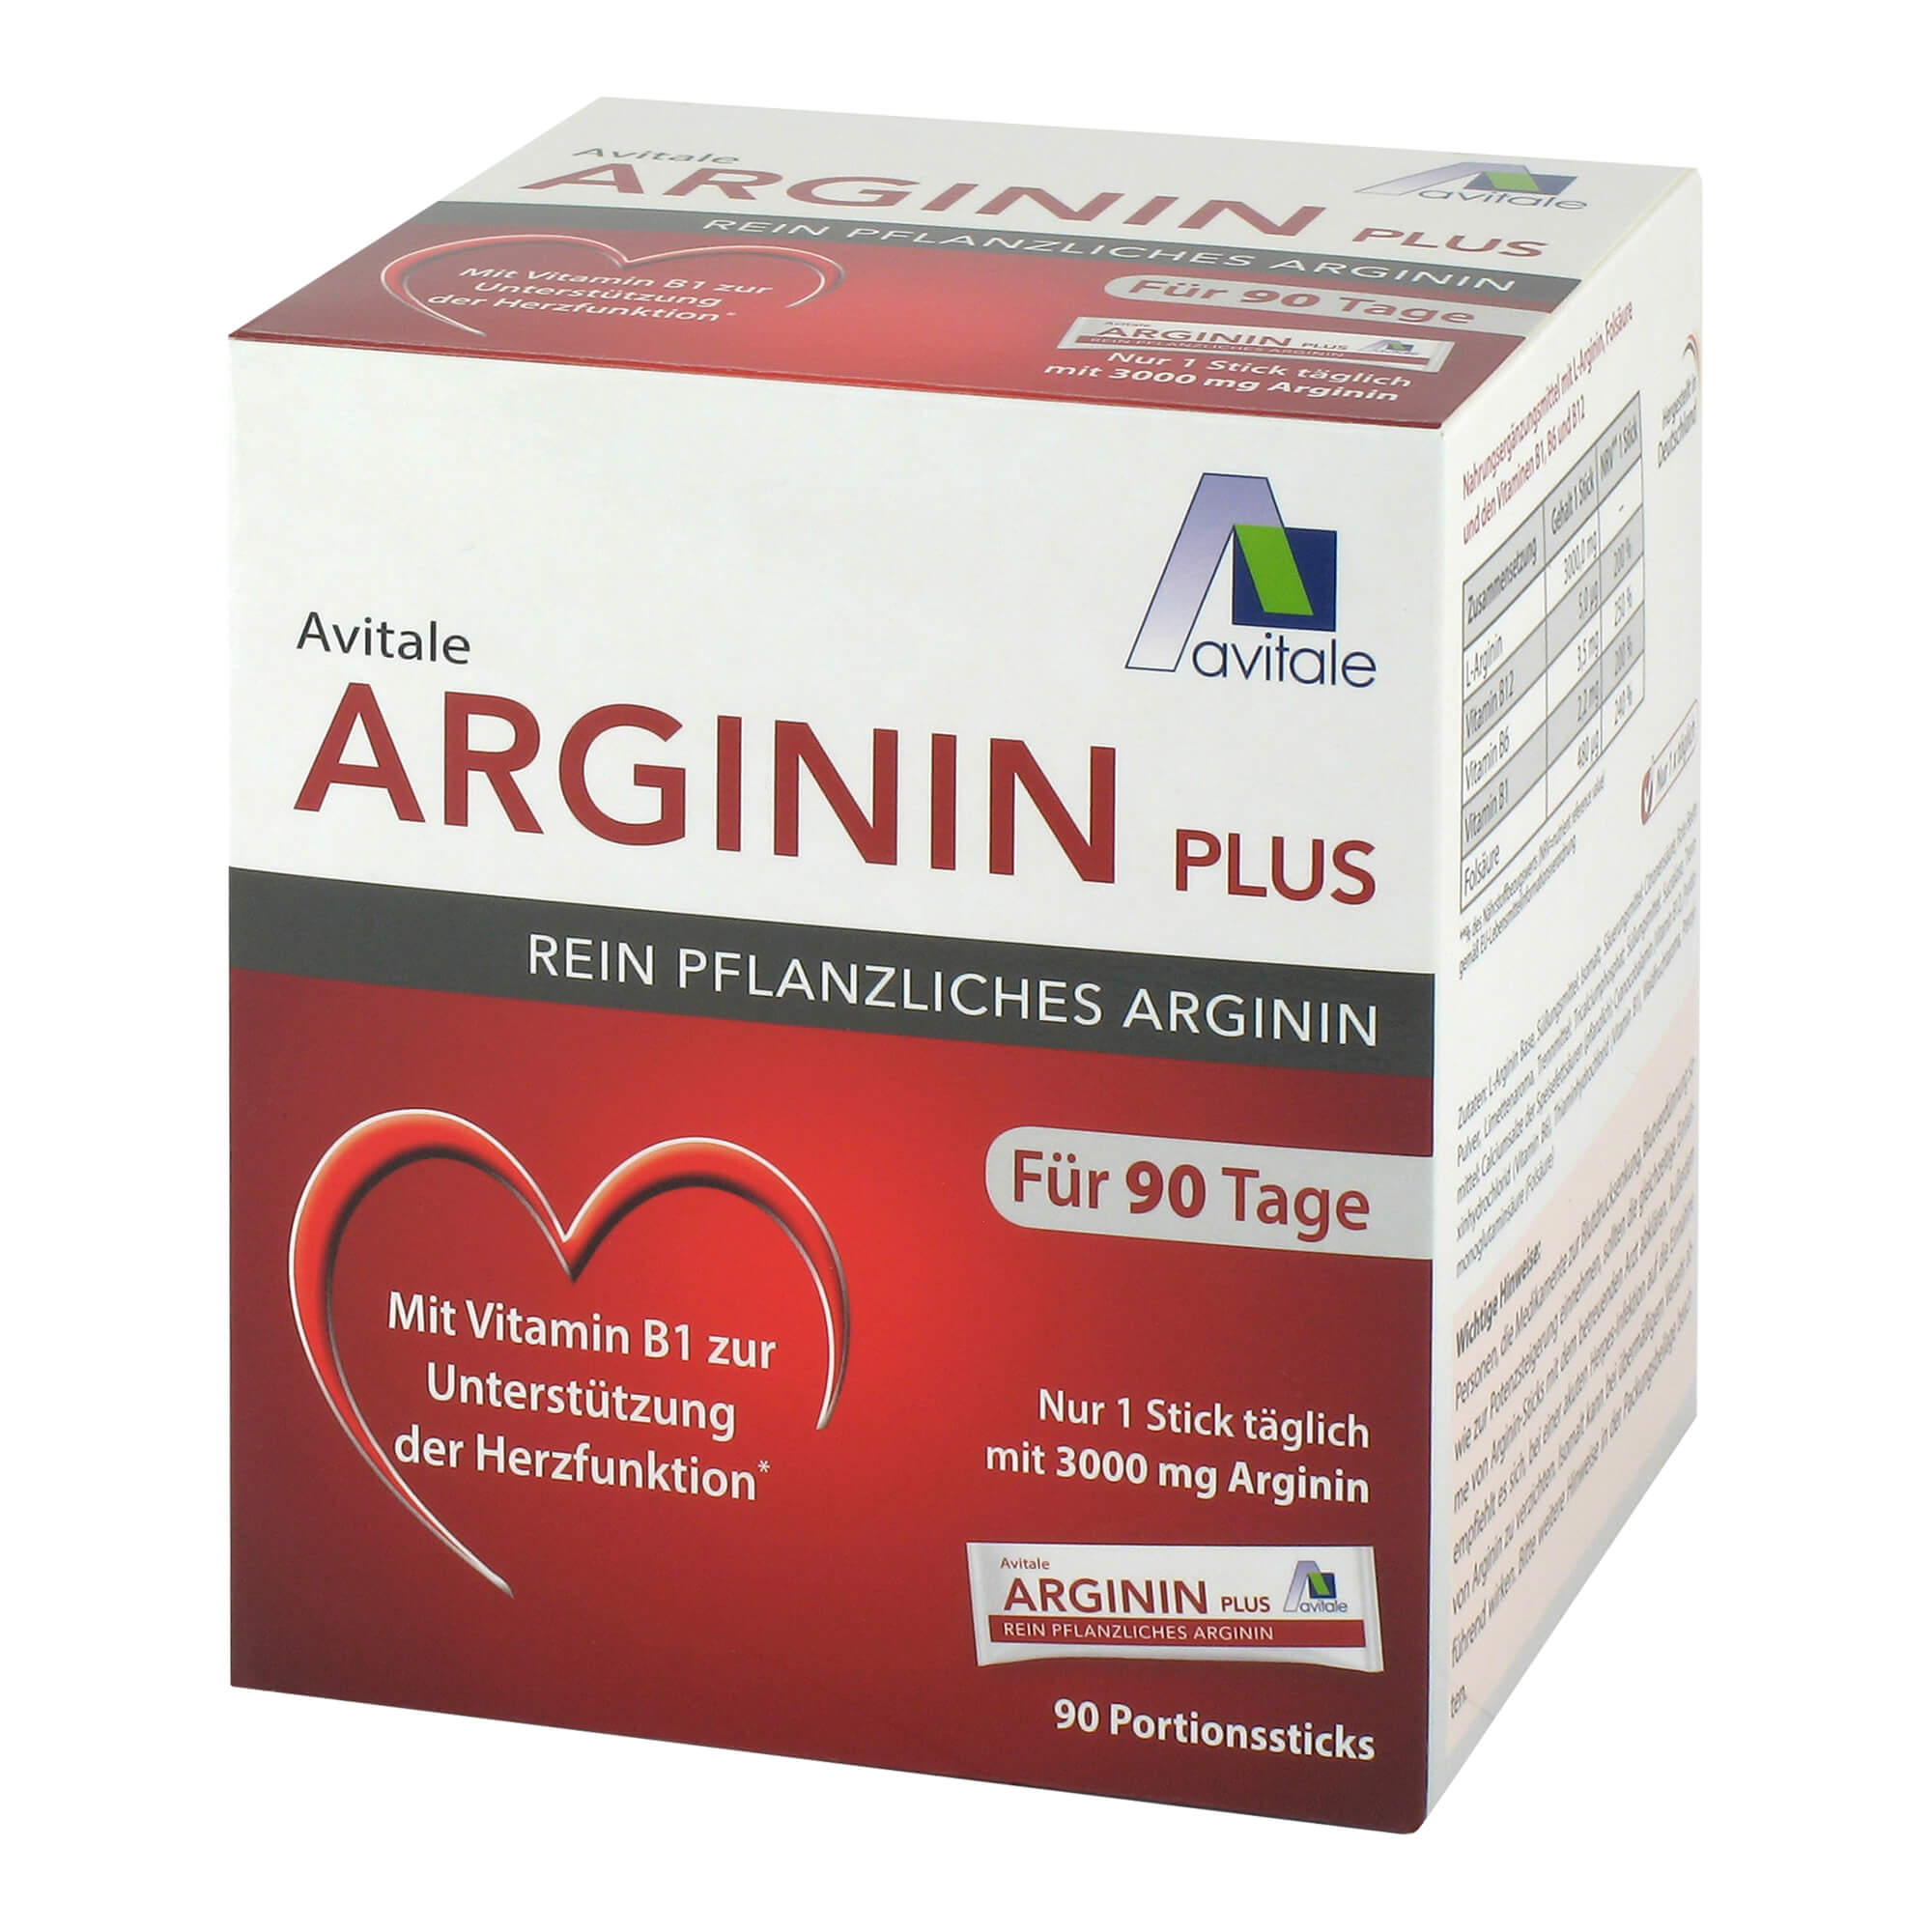 Portionssticks mit 3000 mg rein pflanzlichem Arginin sowie Vitamin B1, B6, B12 und Folsäure.